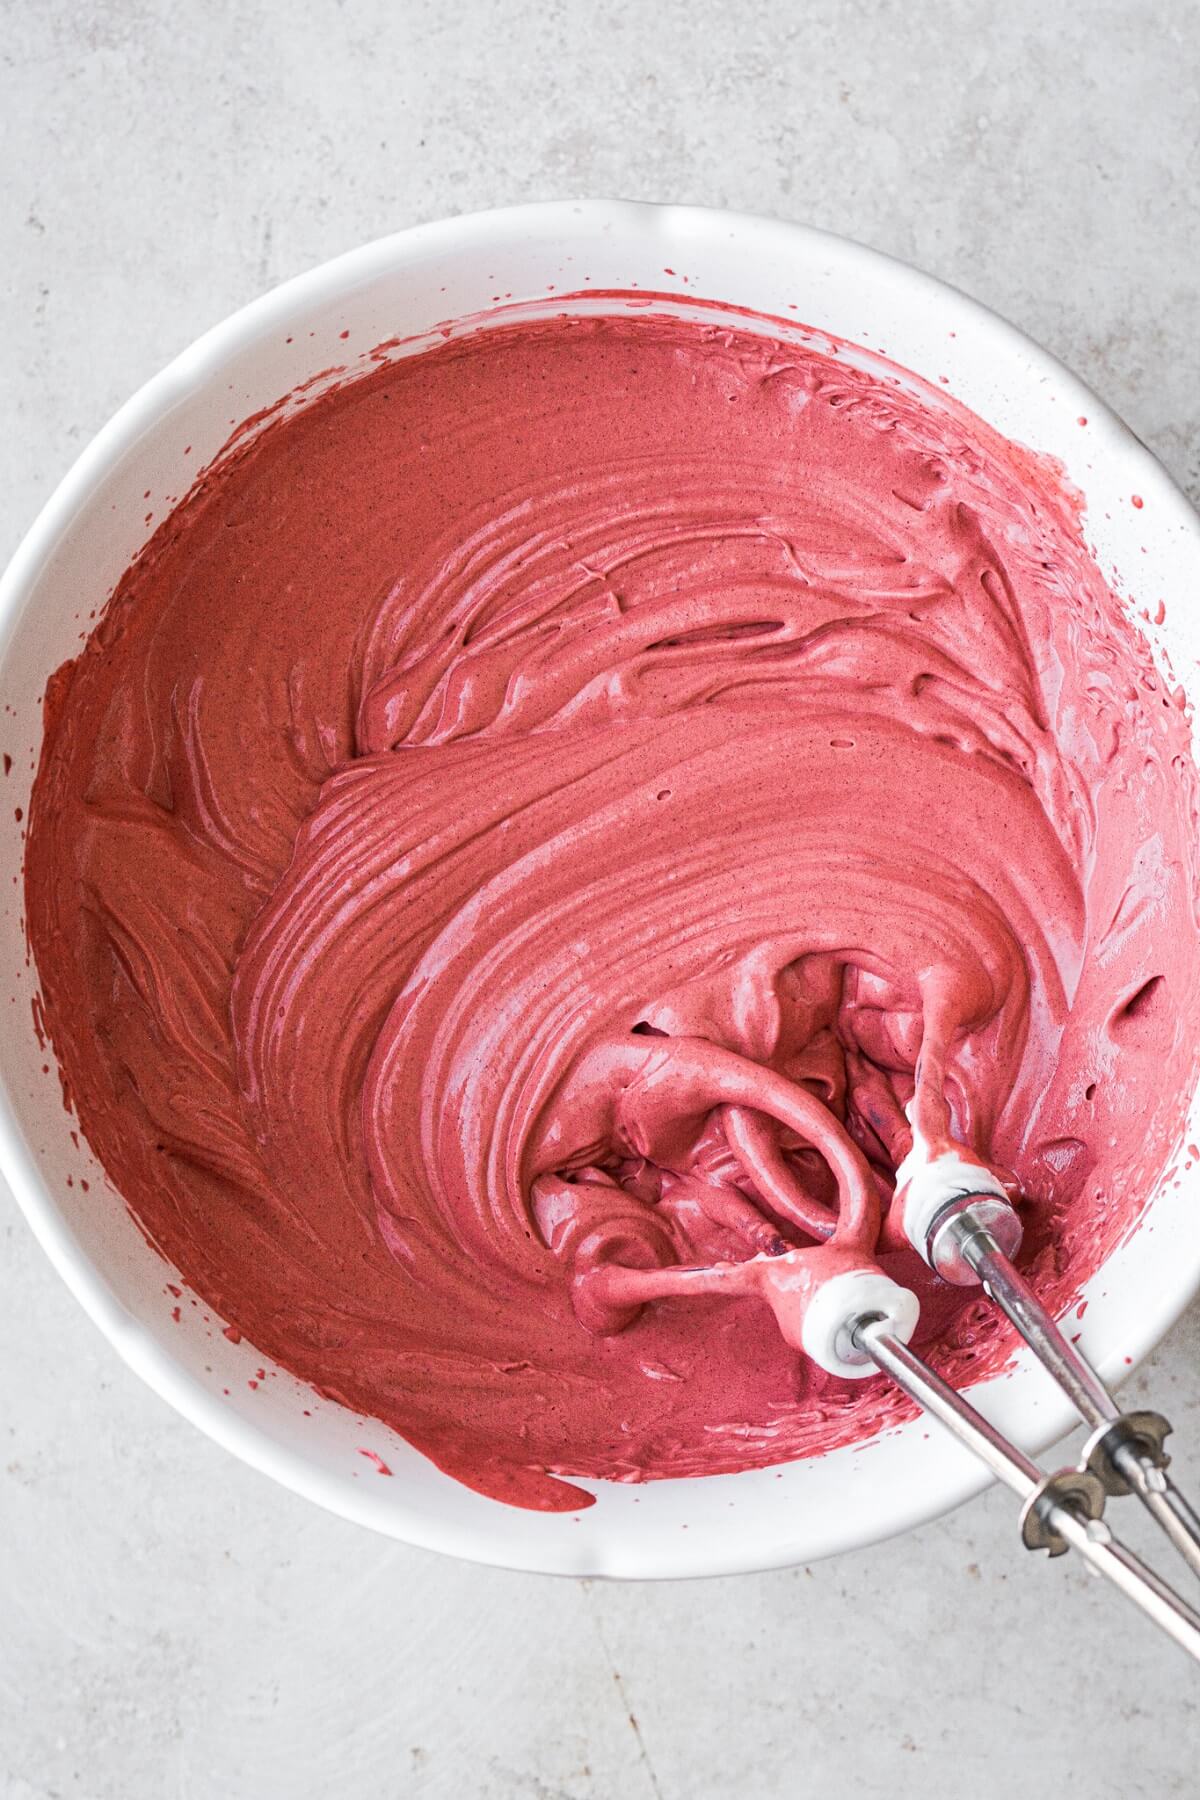 Step 6 for making red velvet ice cream.